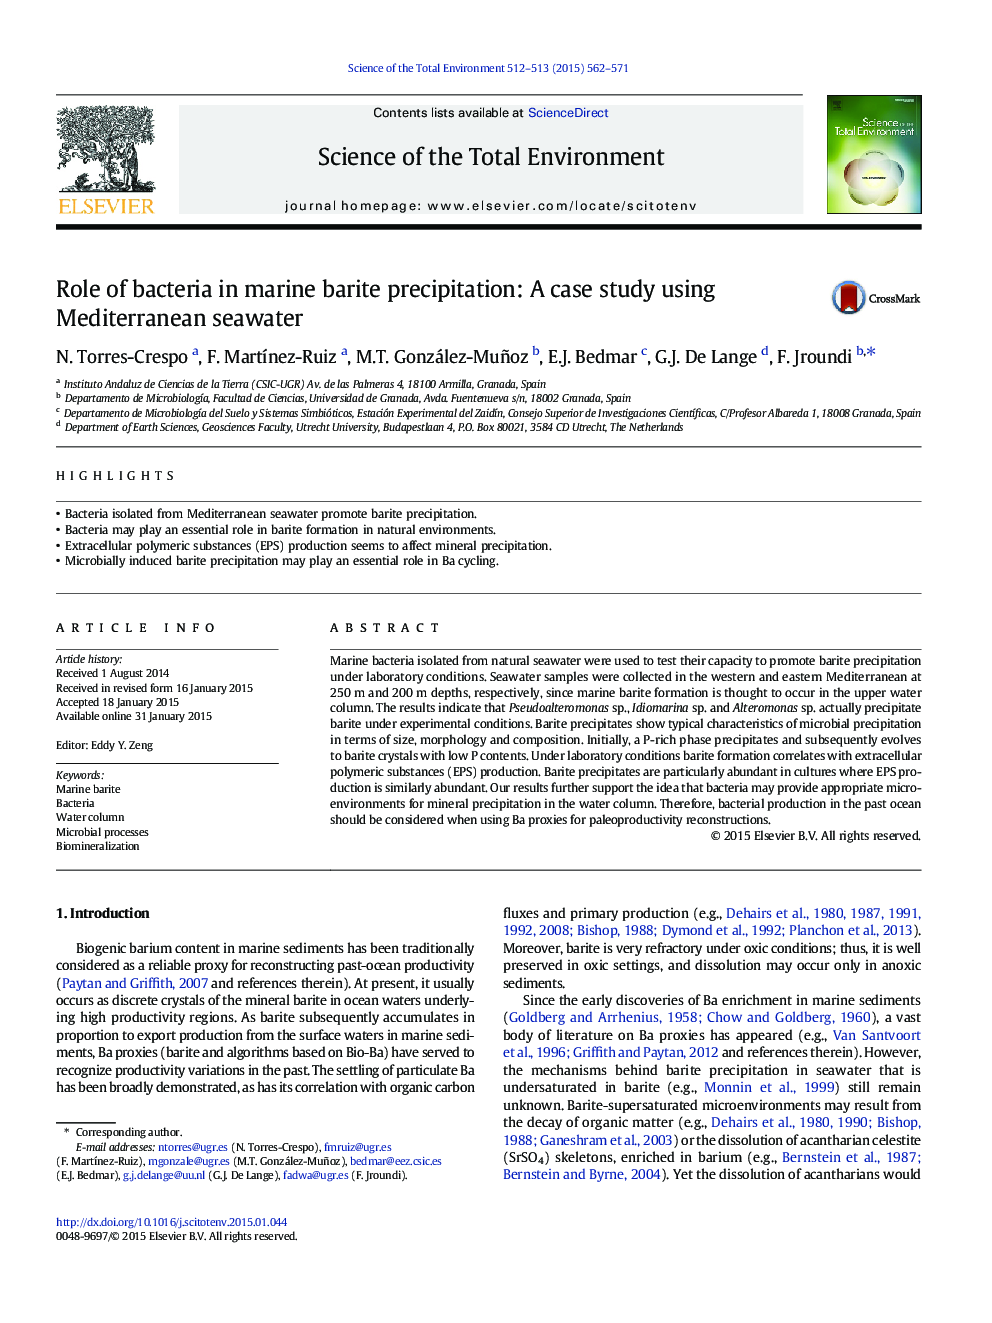 نقش باکتری در باریت دریایی دریایی: مطالعه موردی با استفاده از آب دریای مدیترانه 